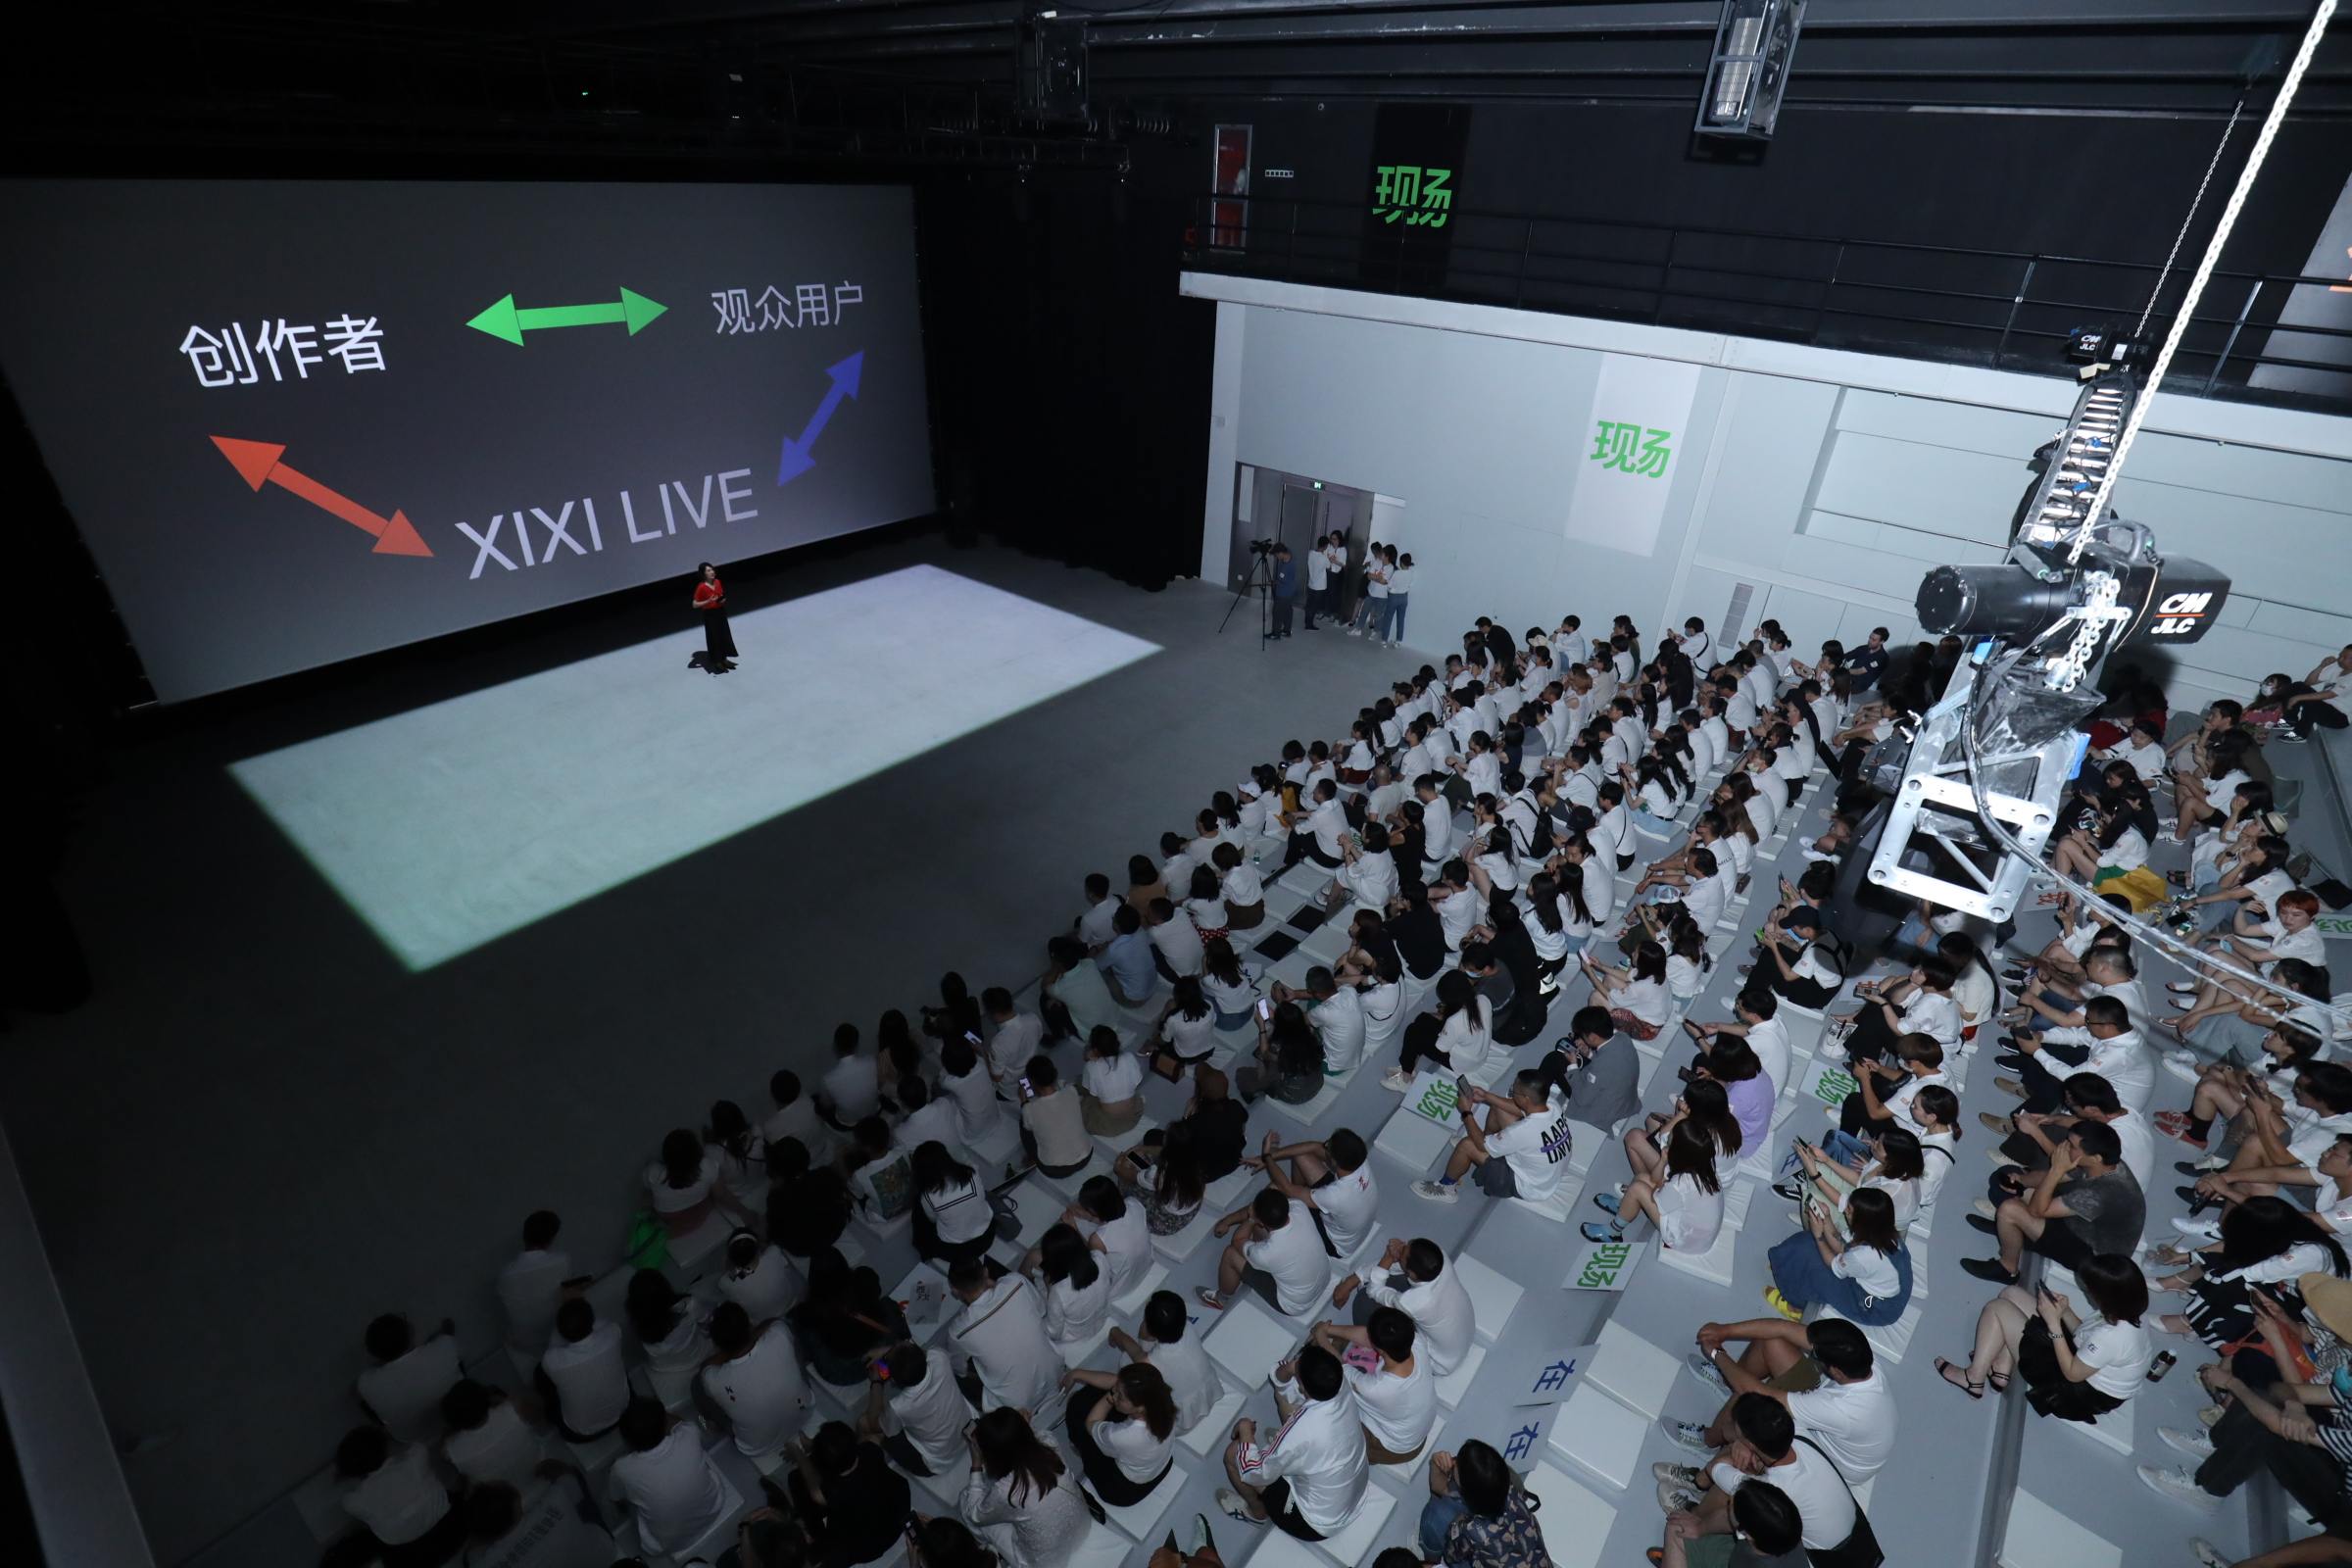 体验消费盛行，「西戏·XIXI LIVE」打造“艺术+商业”空间综合体